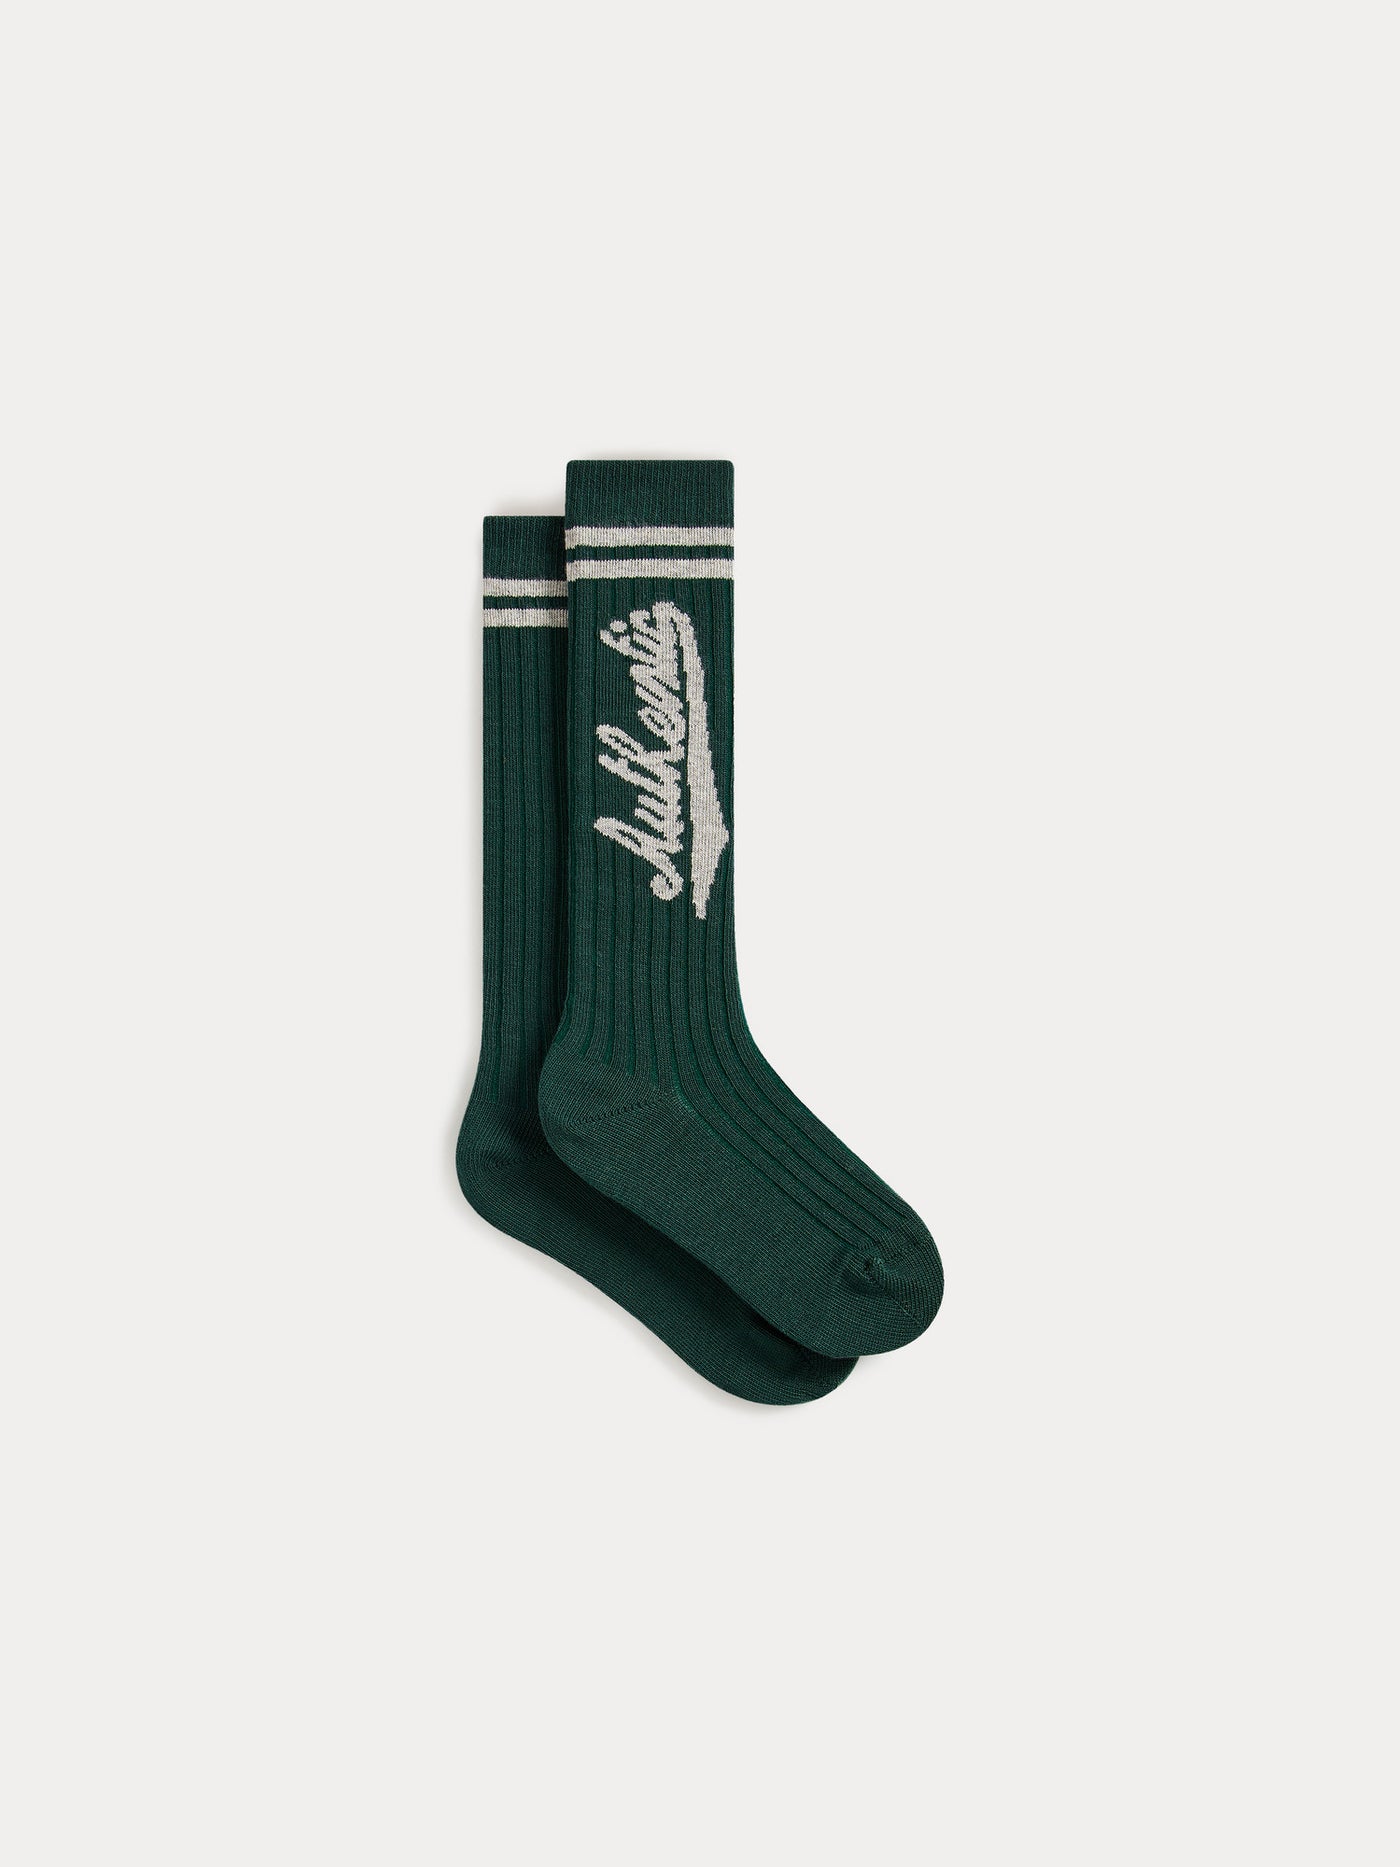 Doby Socks green